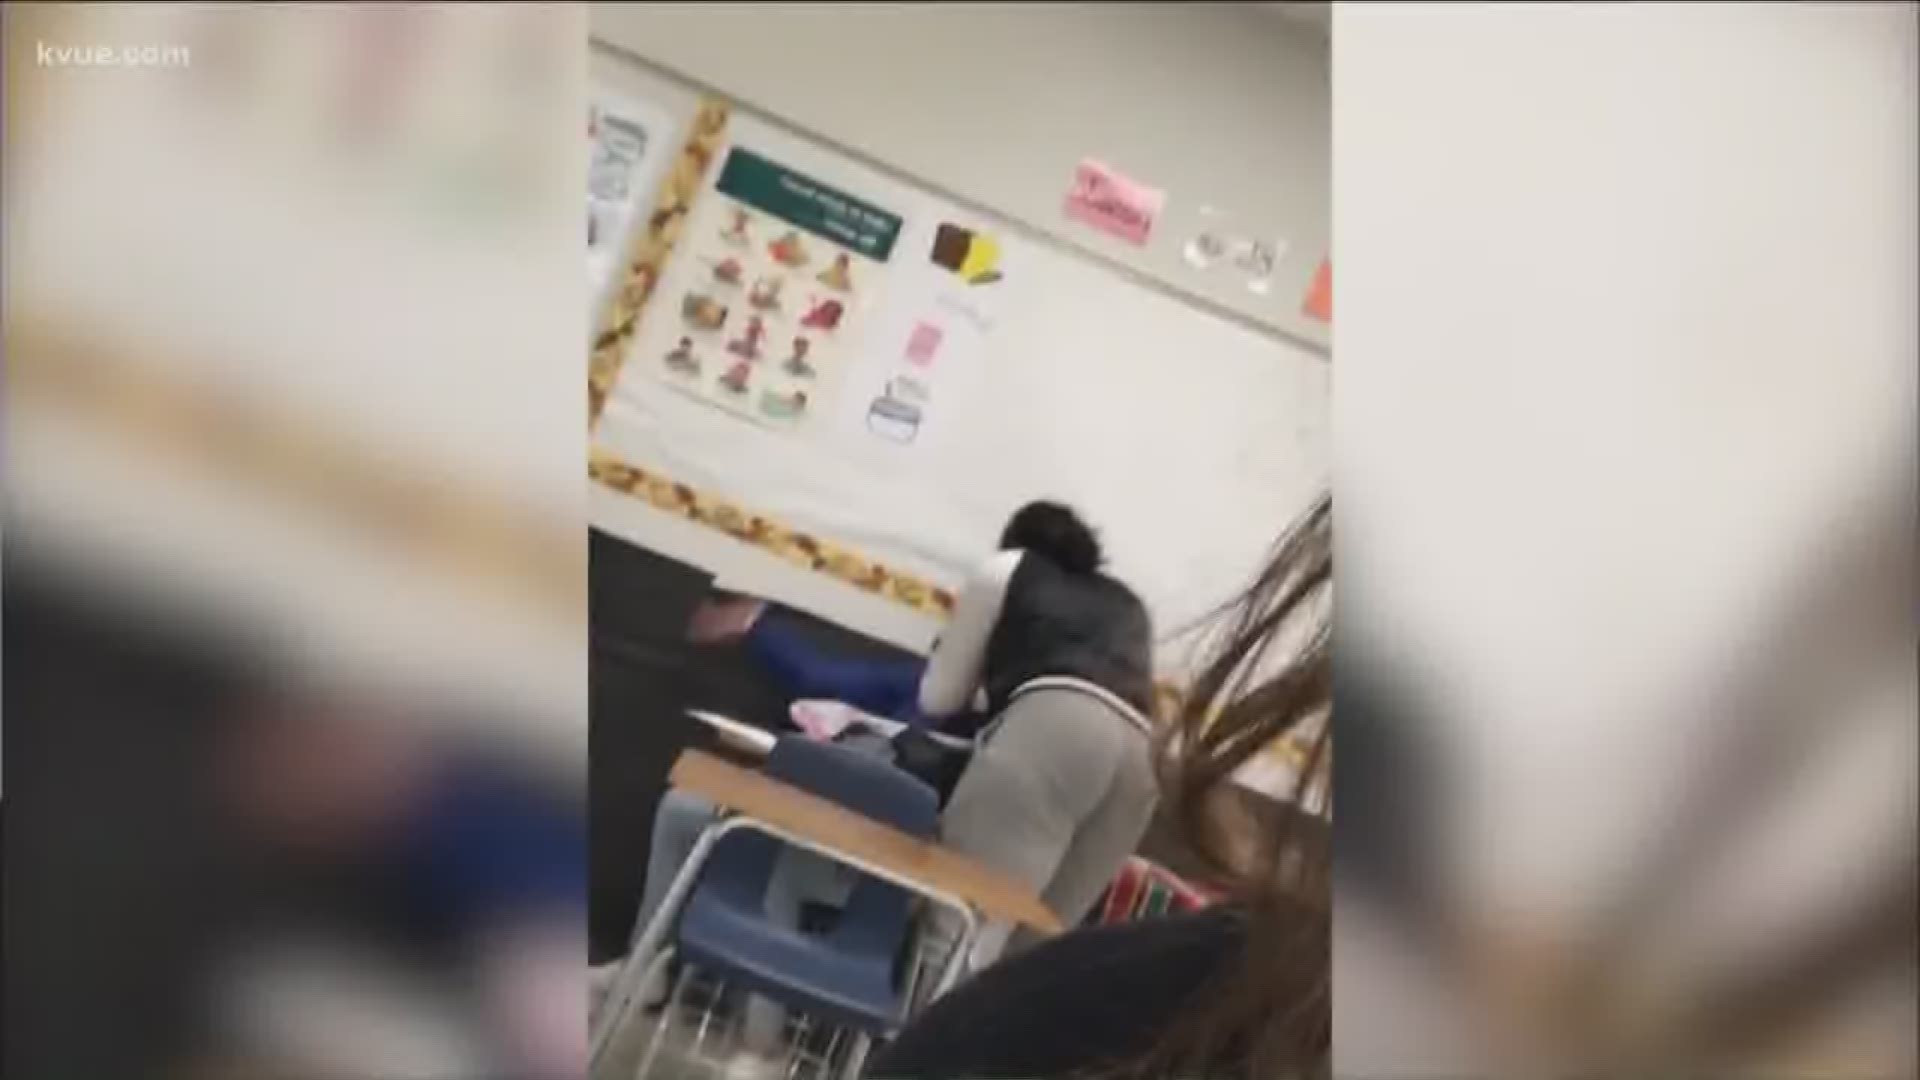 Teacher fired after onlyfans